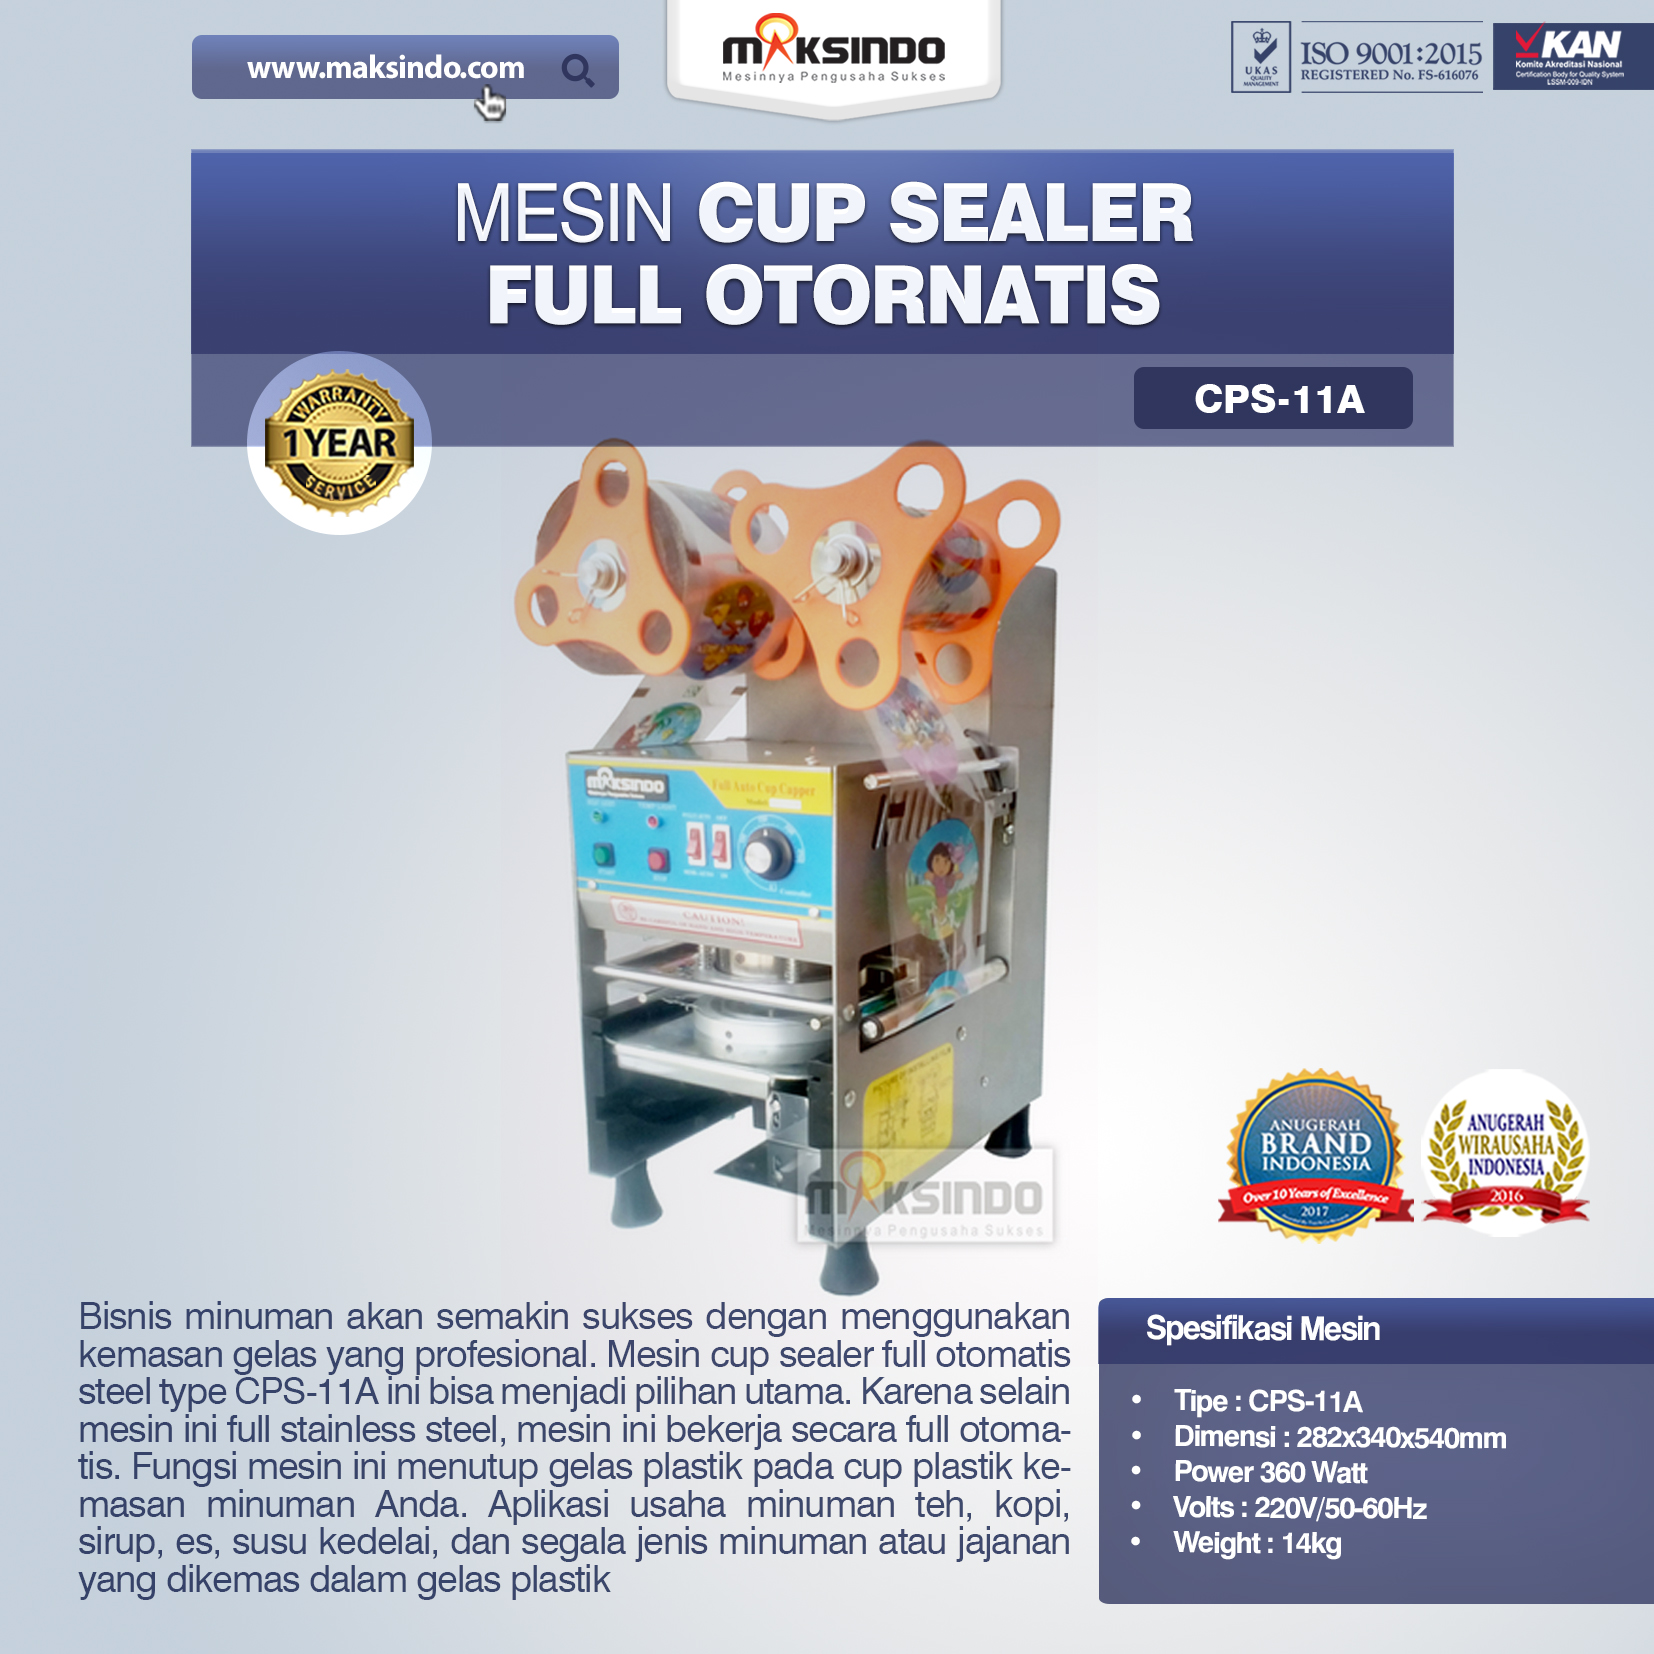 Jual Mesin Cup Sealer Full Otomatis (CPS-11A) di Blitar